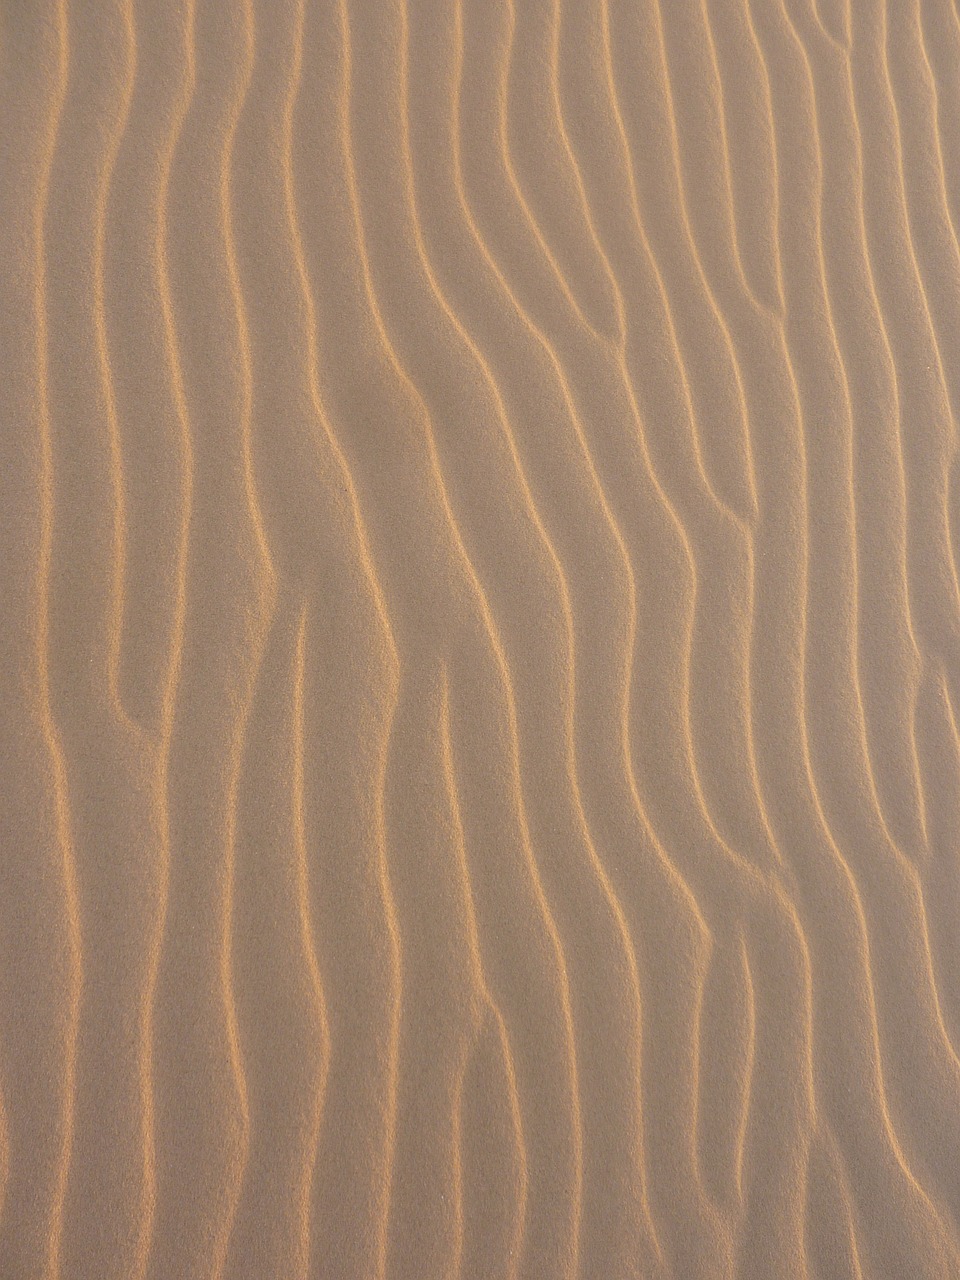 sand pattern beach free photo